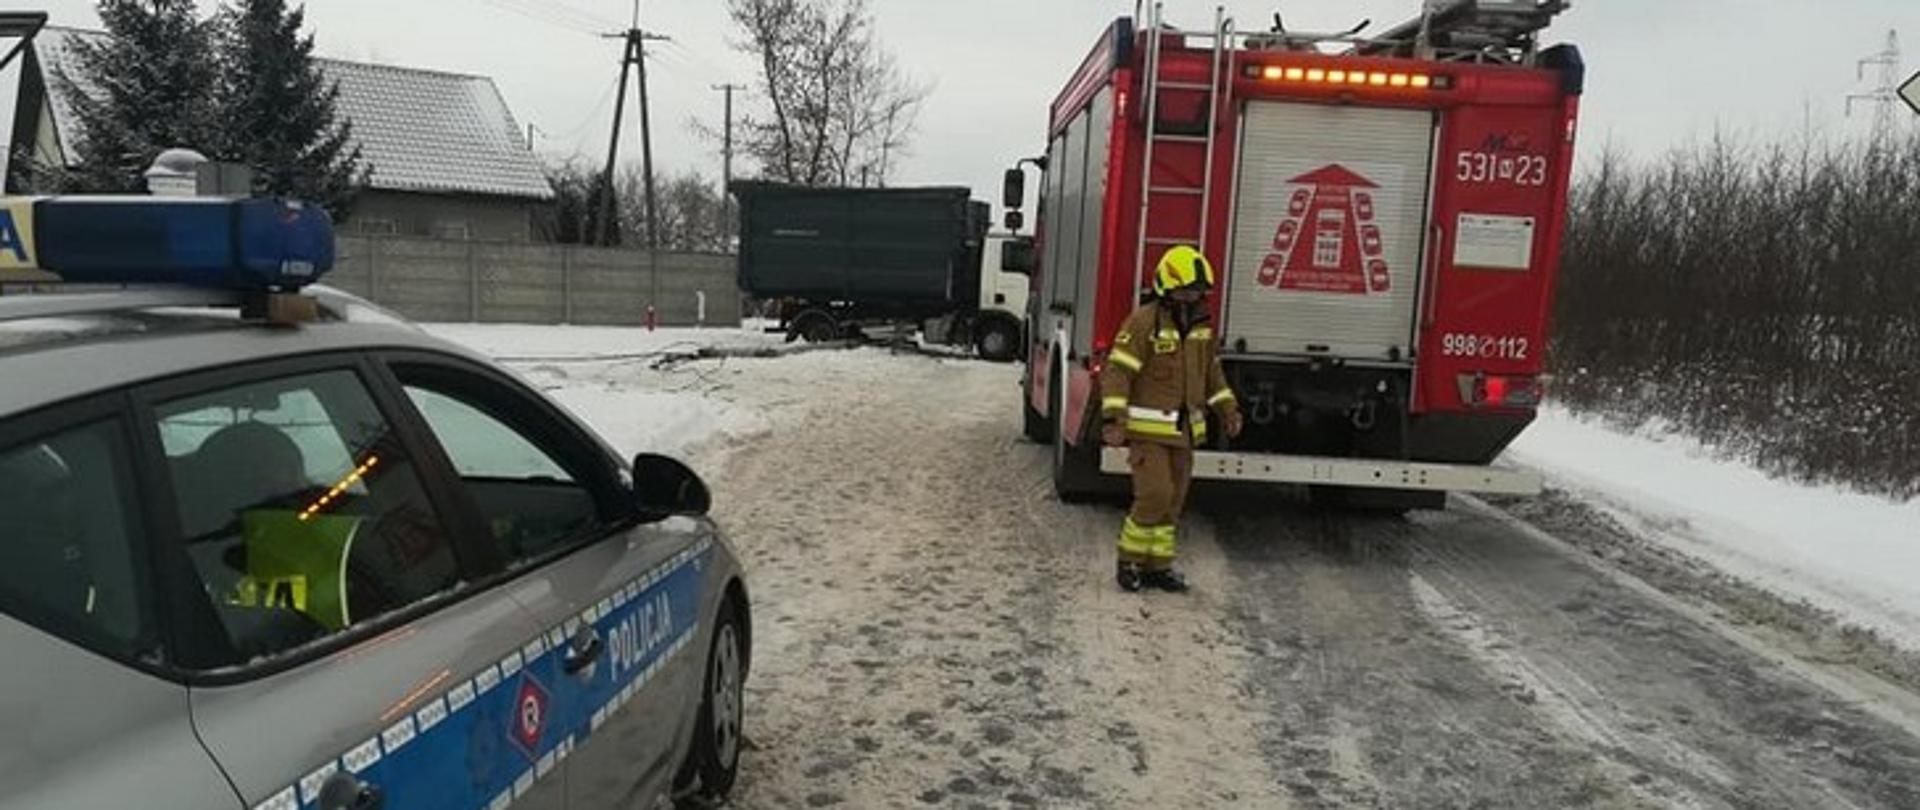 Na zdjęciu widać samochody stojące na zaśnieżonej drodze: policyjny radiowóz oraz pożarniczy, z przechodzącym obok strażakiem. W dalszej perspektywie widać uszkodzoną ciężarówkę.